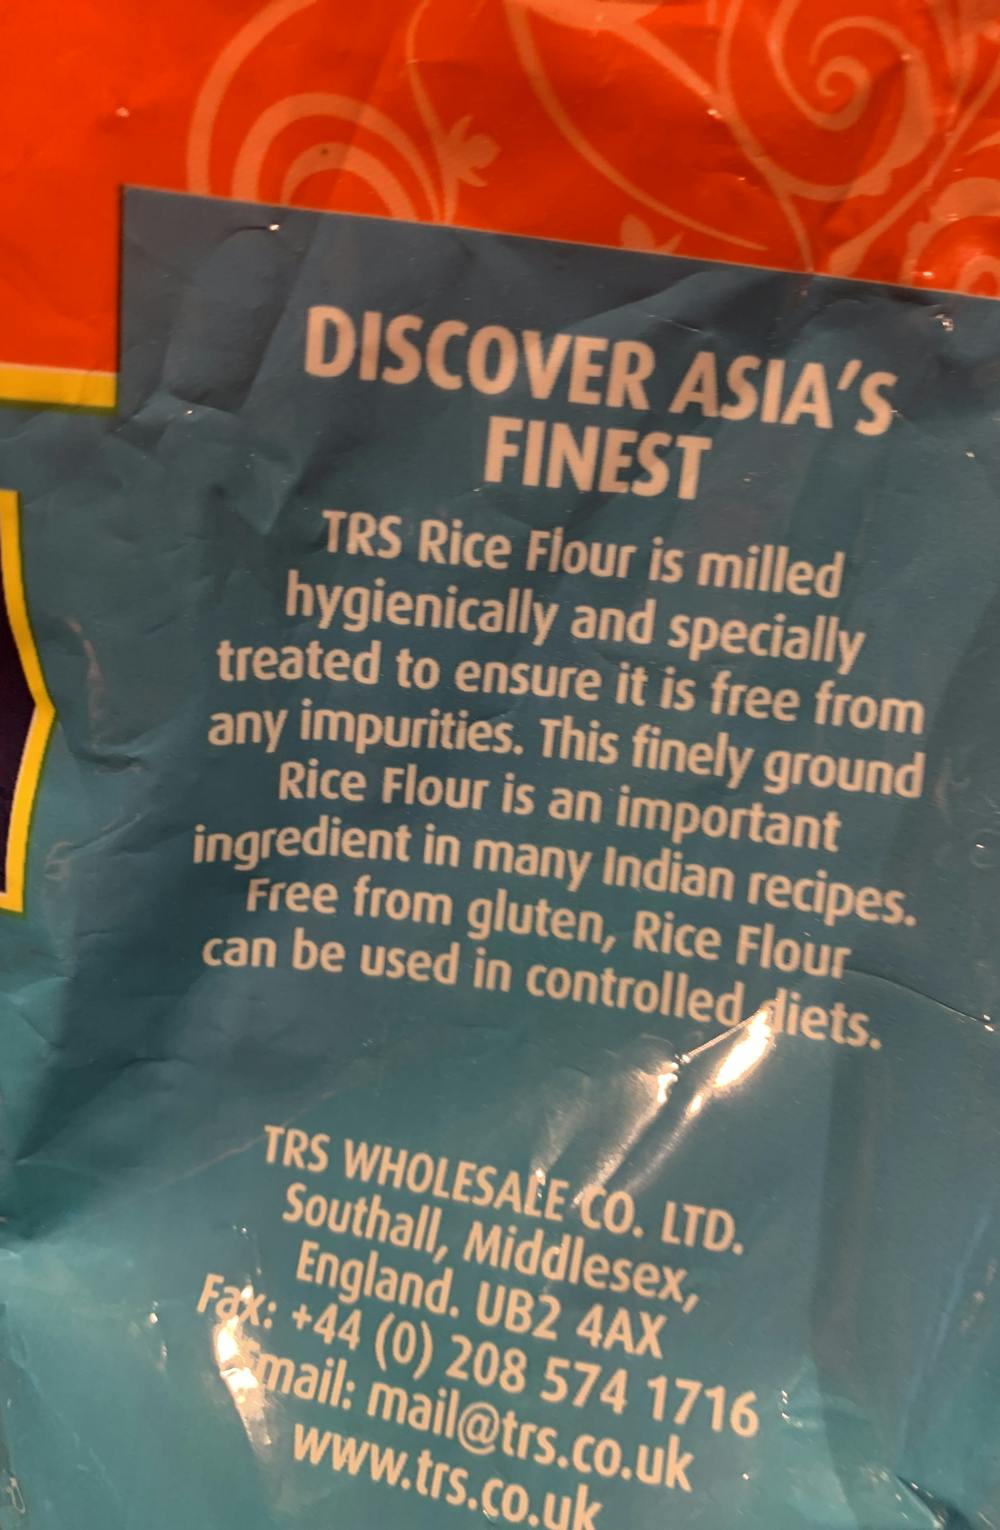 Ingredienslisten til TRS Rice flour